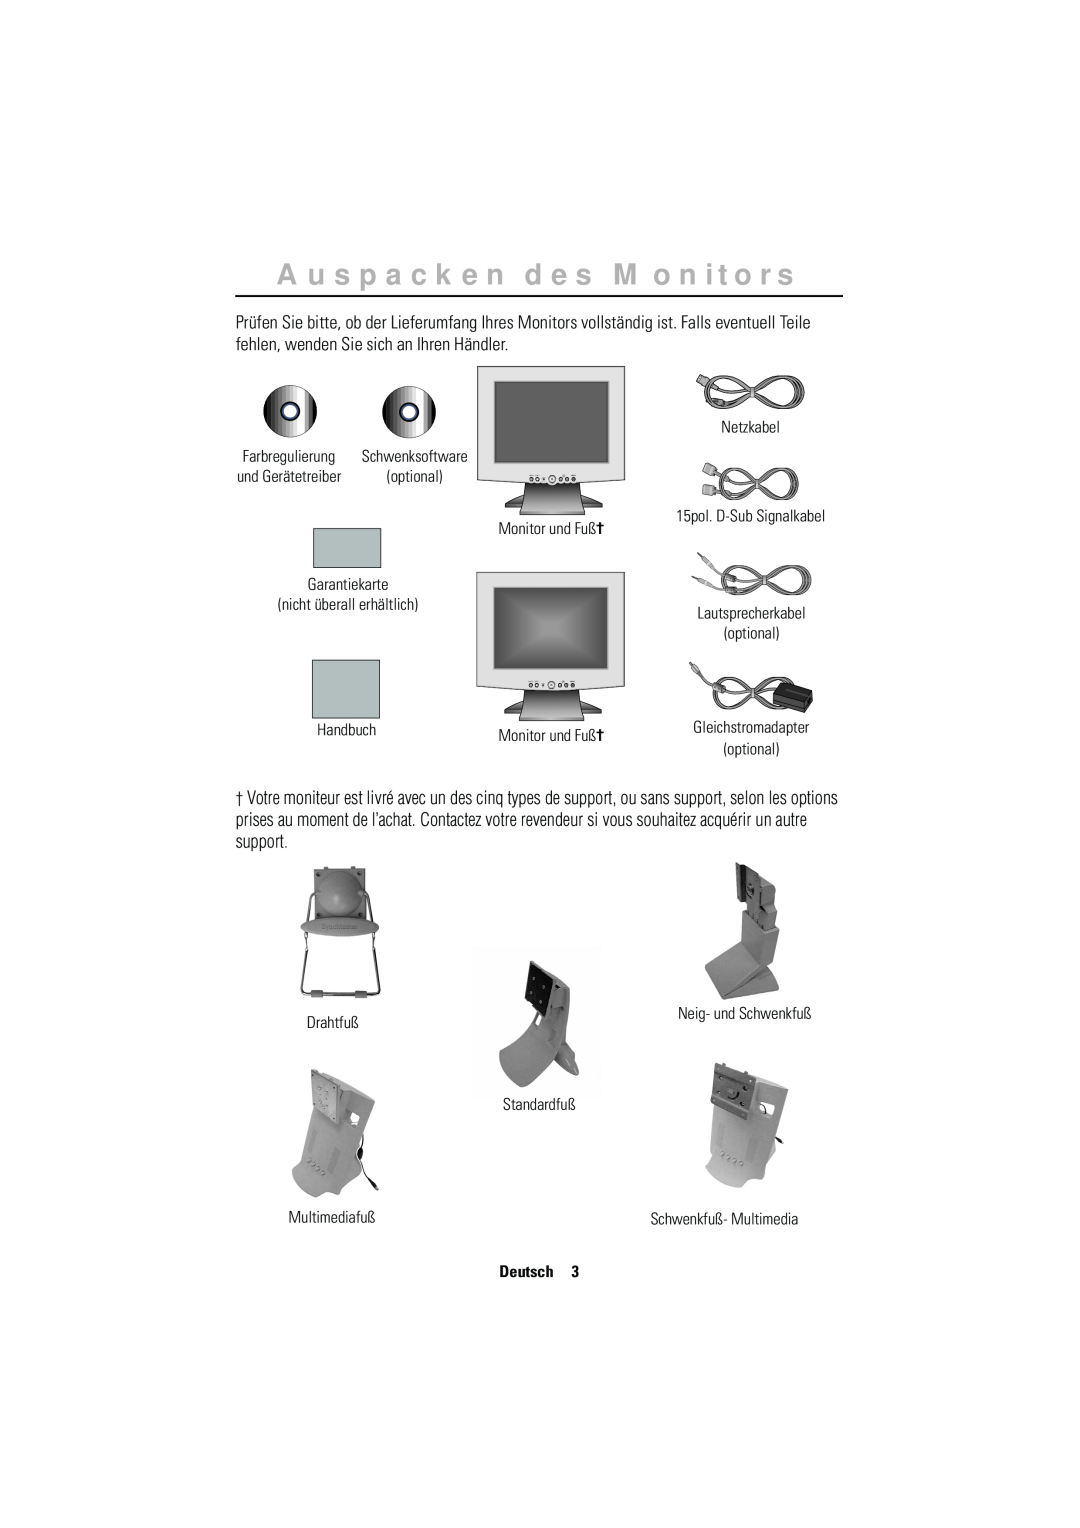 Samsung RN15MSSFN/EDC Auspacken des Monitors, Netzkabel, 15pol. D-Sub Signalkabel Monitor und Fuß† Garantiekarte, Handbuch 